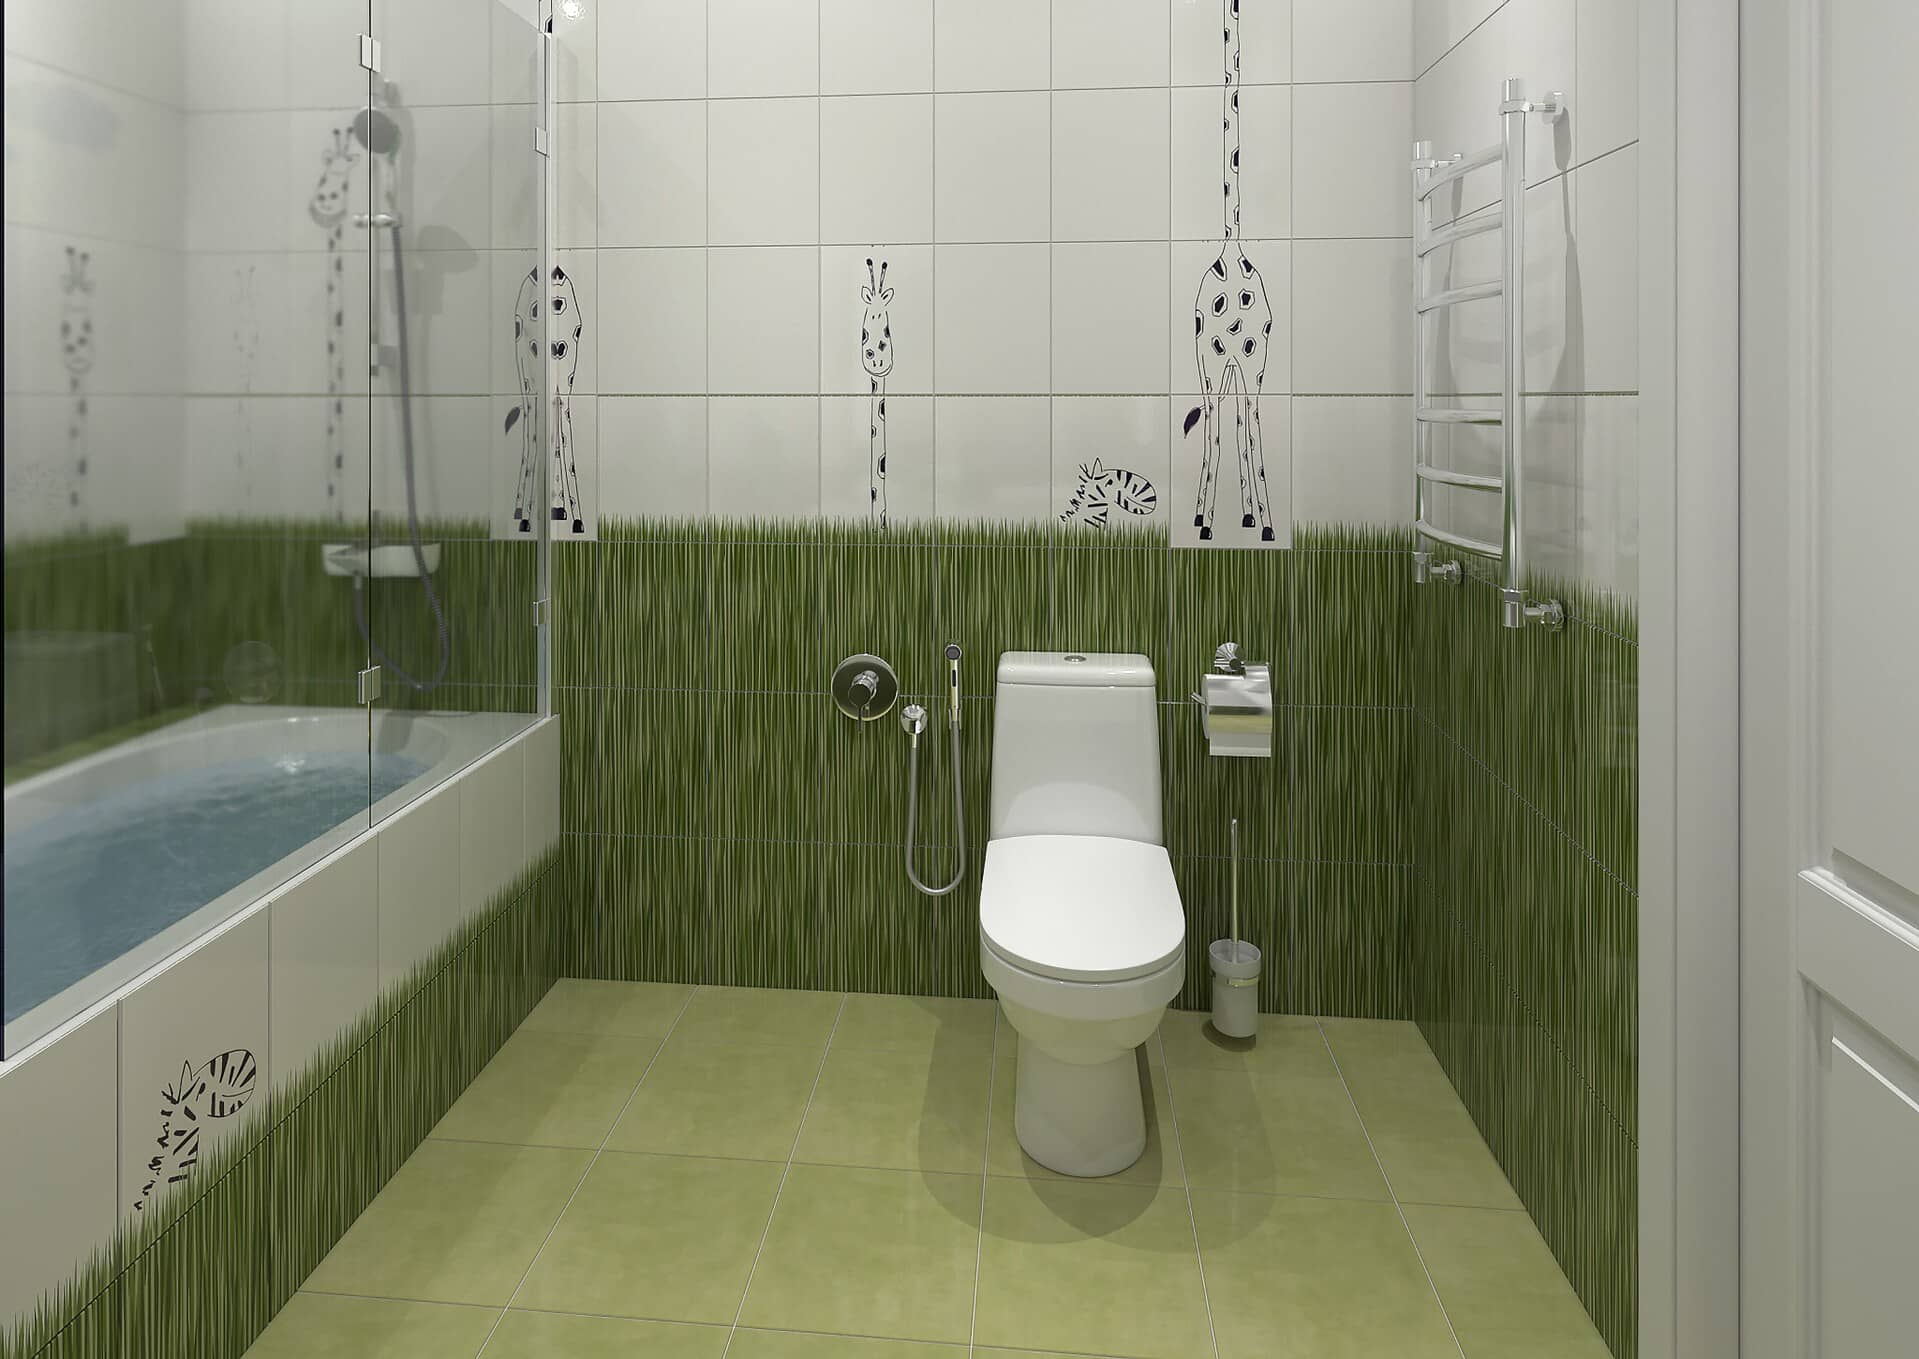 Детская ванная комната выполнена в плитке белого и зелёного цвета